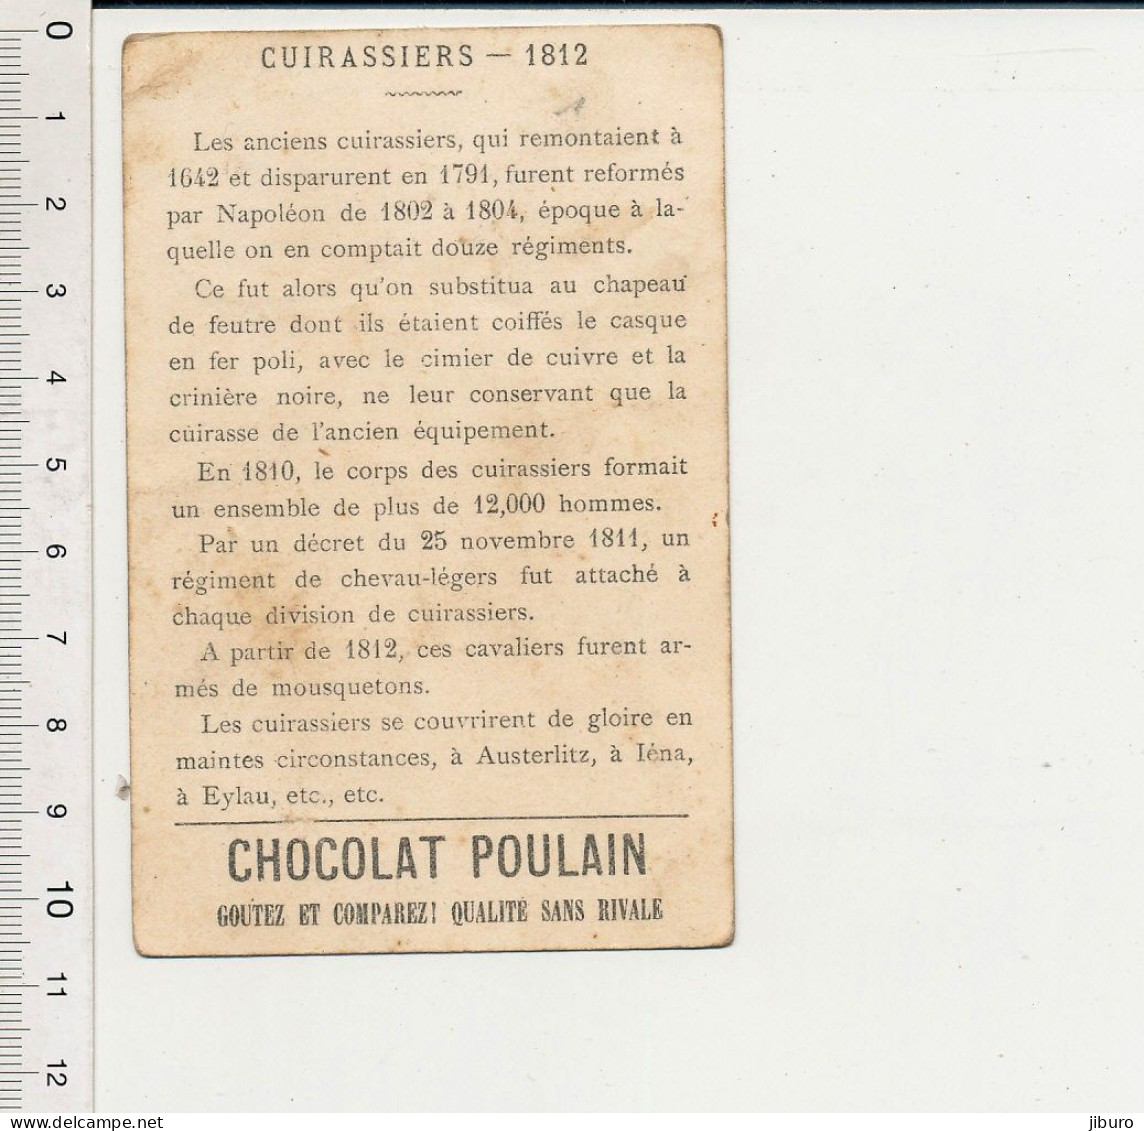 Image Chromo Ancienne Chocolat Poulain Cuirassiers 1812 Armée Napoléonienne Lithographie Sicard Rue Amelot Paris IM164/3 - Poulain